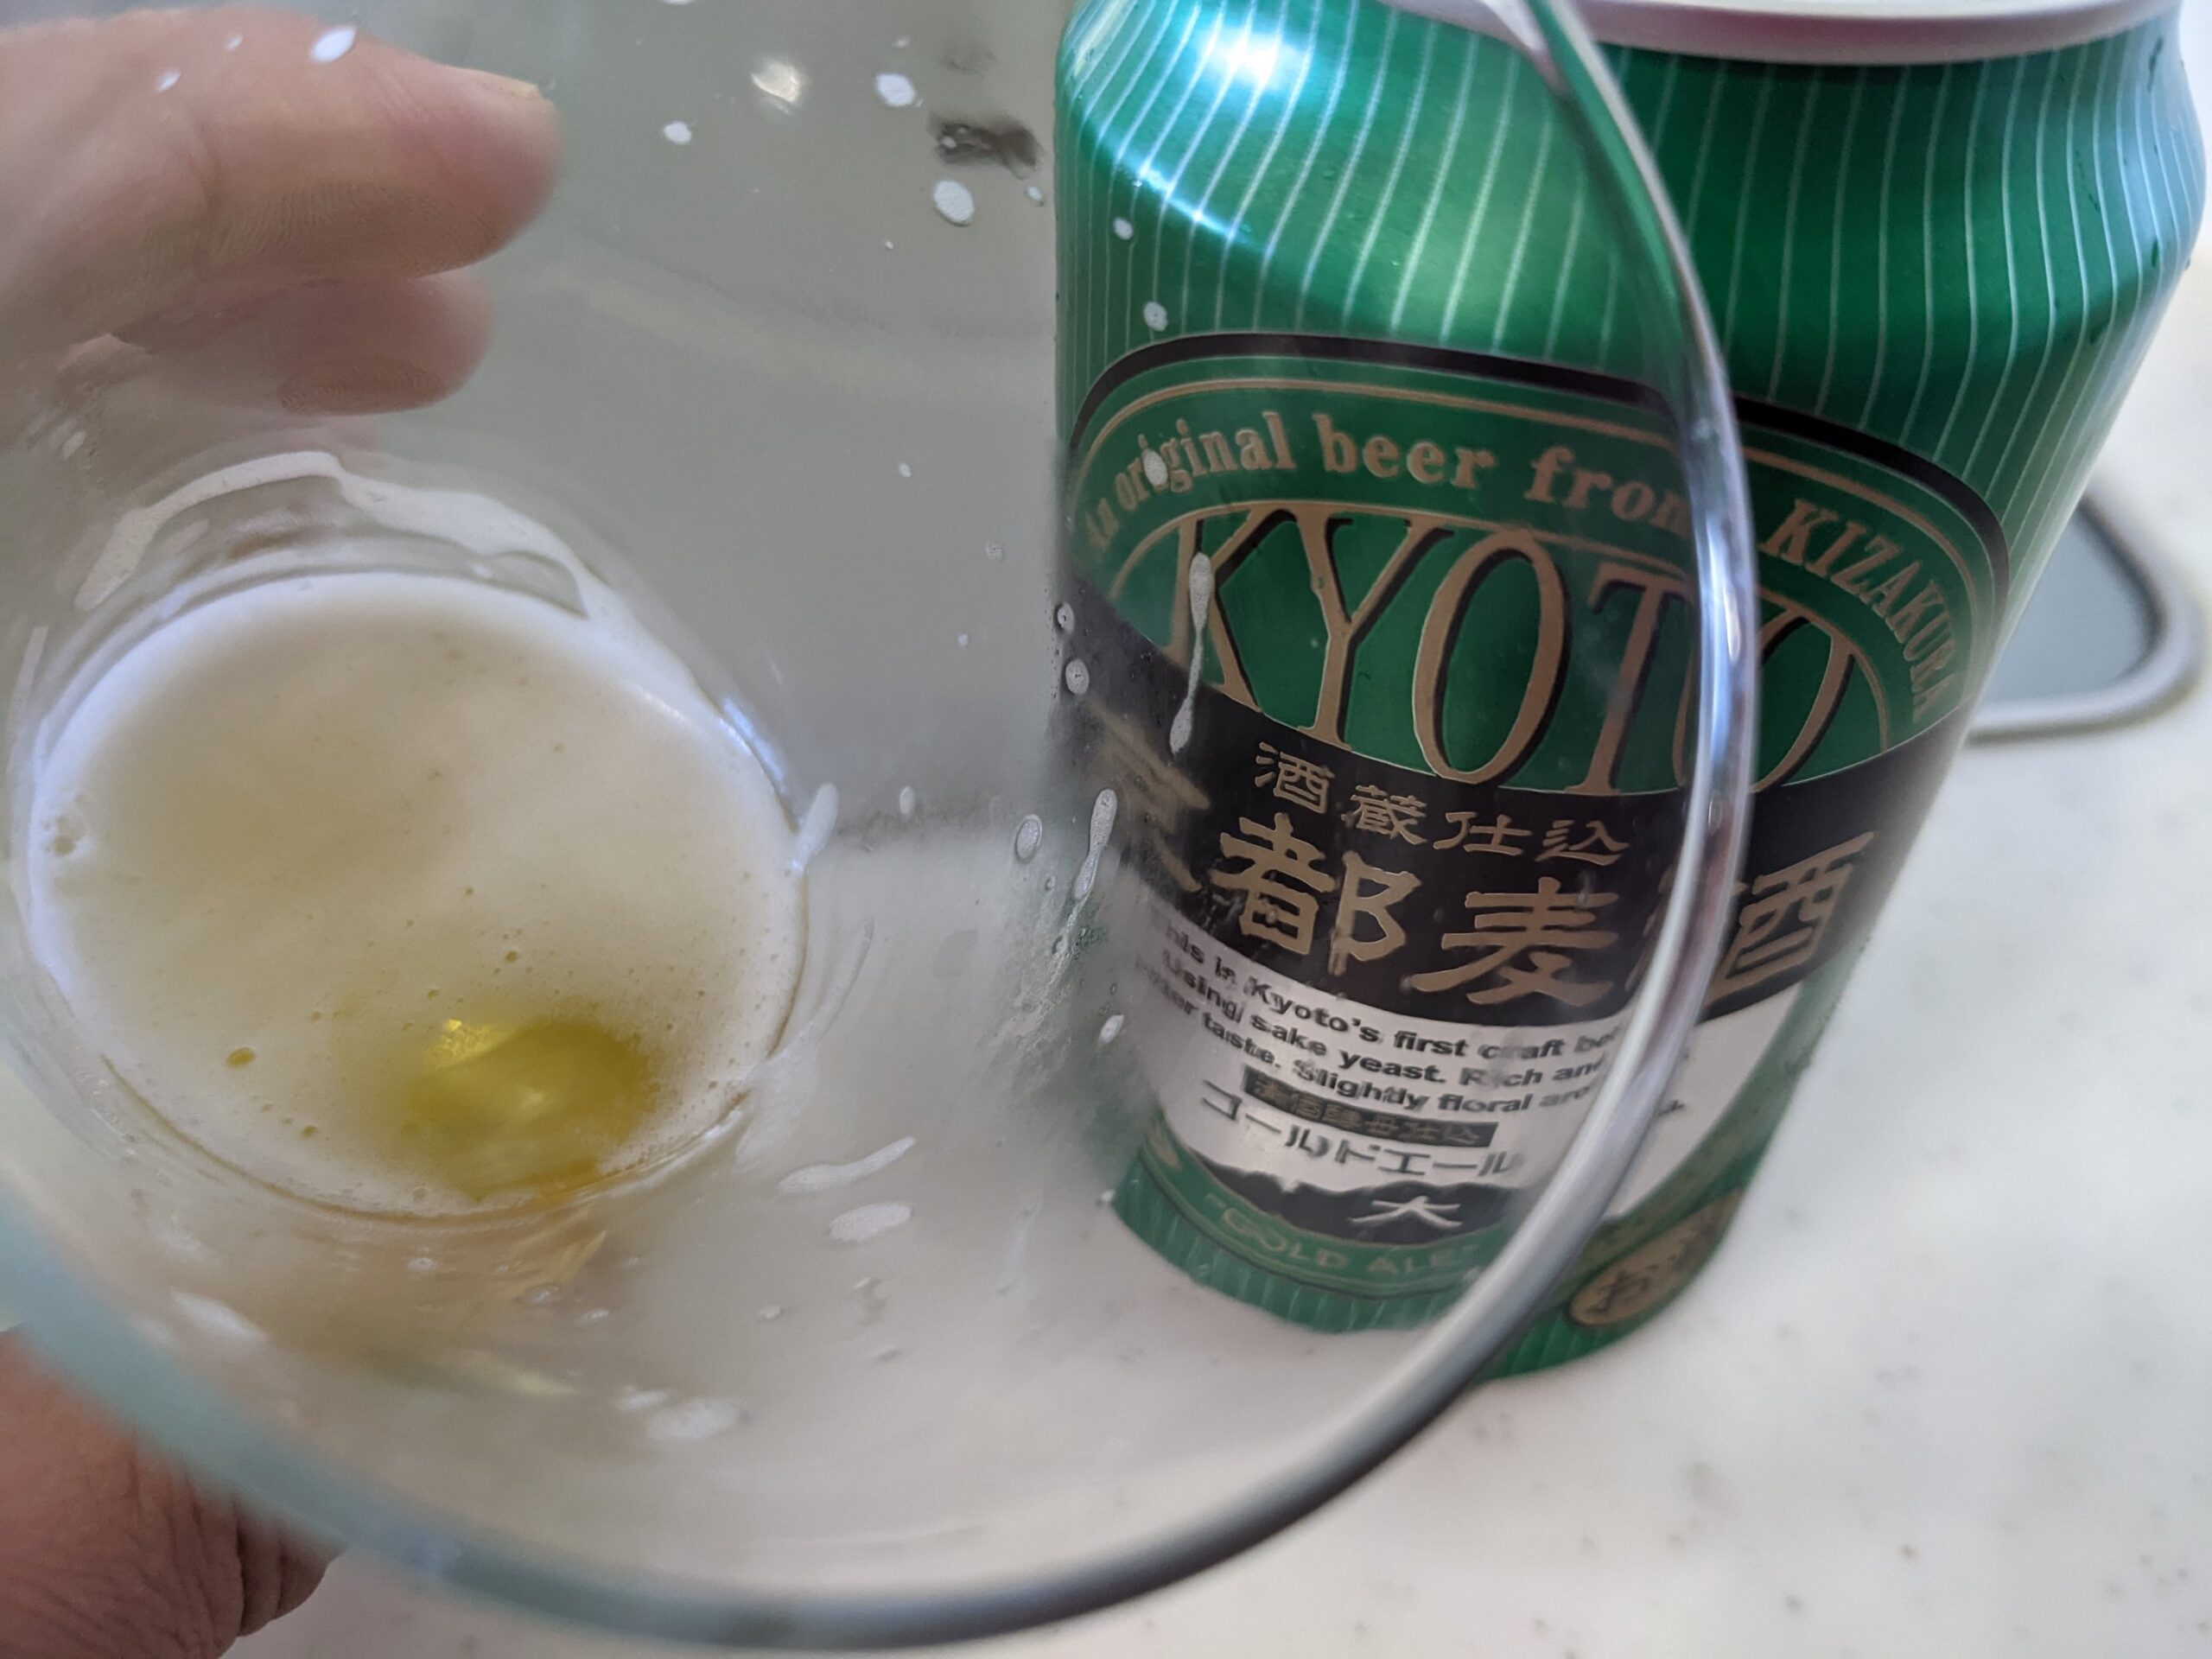 グラスに残ったわずかの「京都麦酒ゴールドエール 」